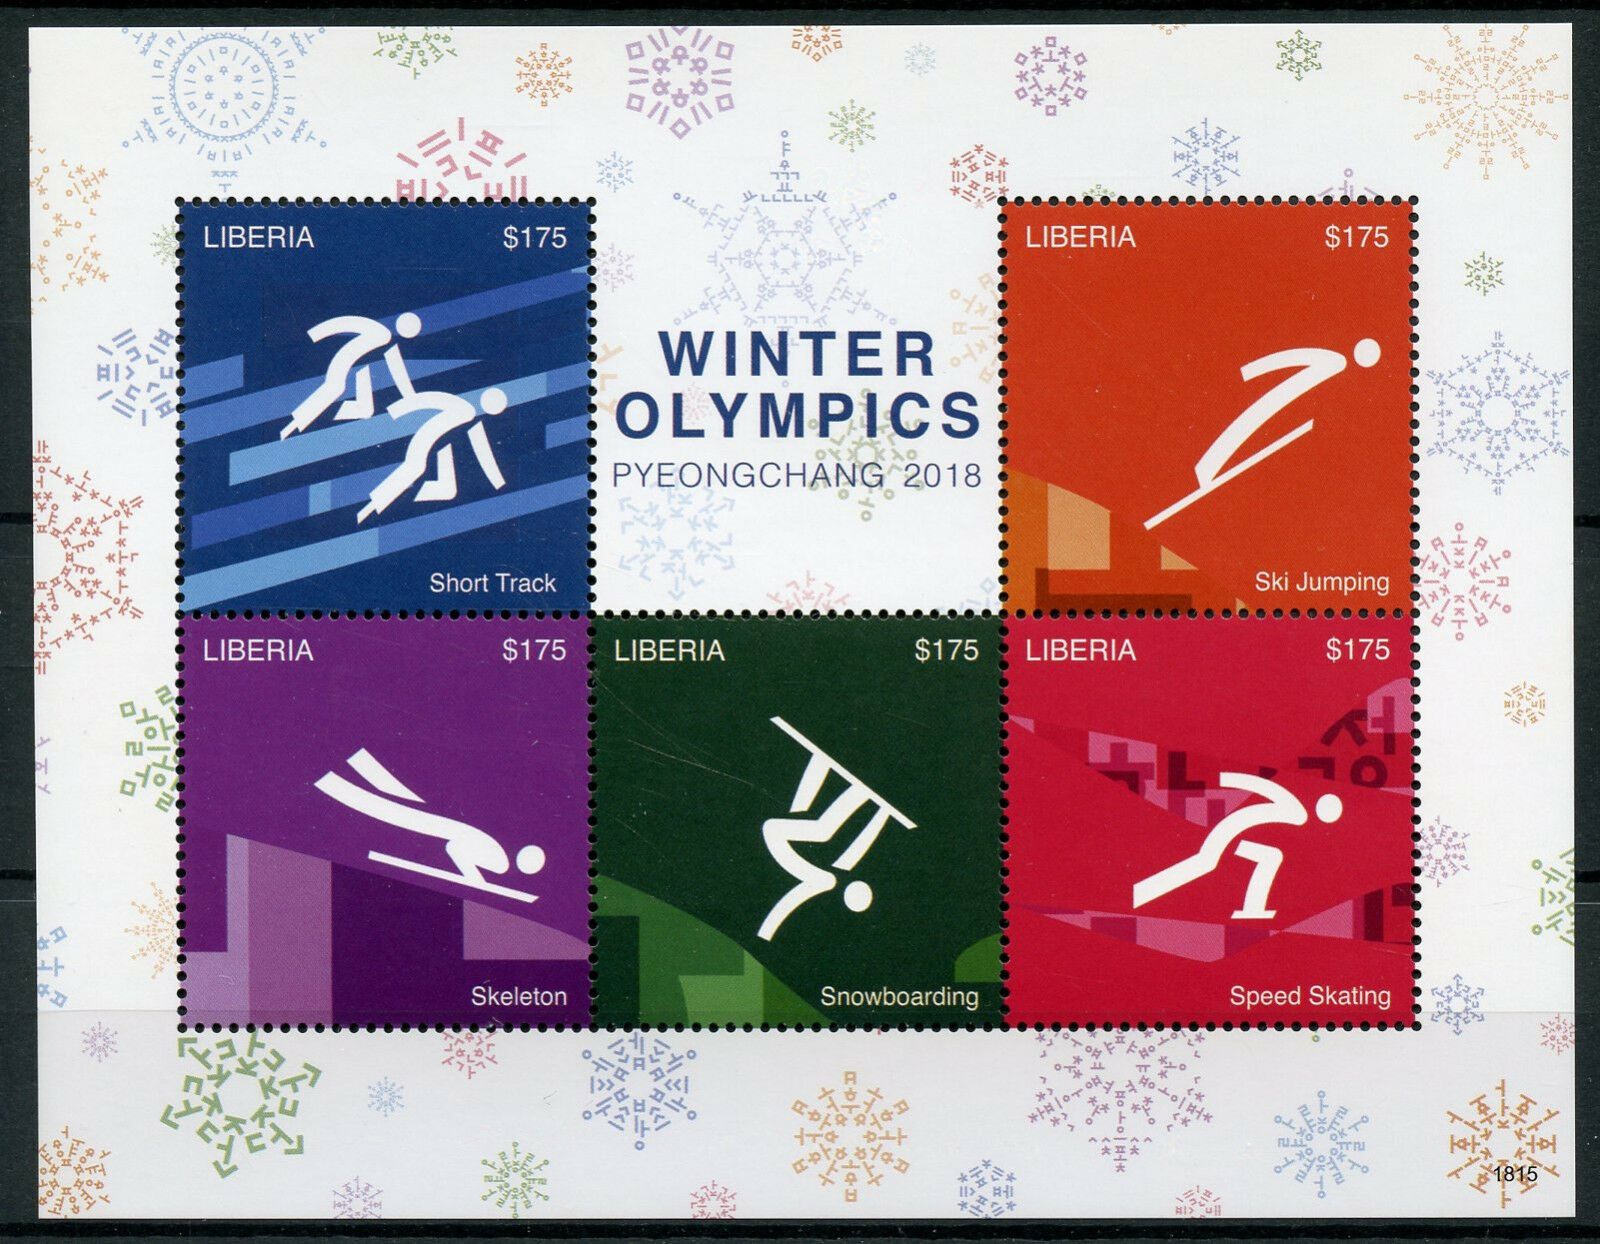 почтовая марка Олимпиады Пхёнчхан 2018 Либерия